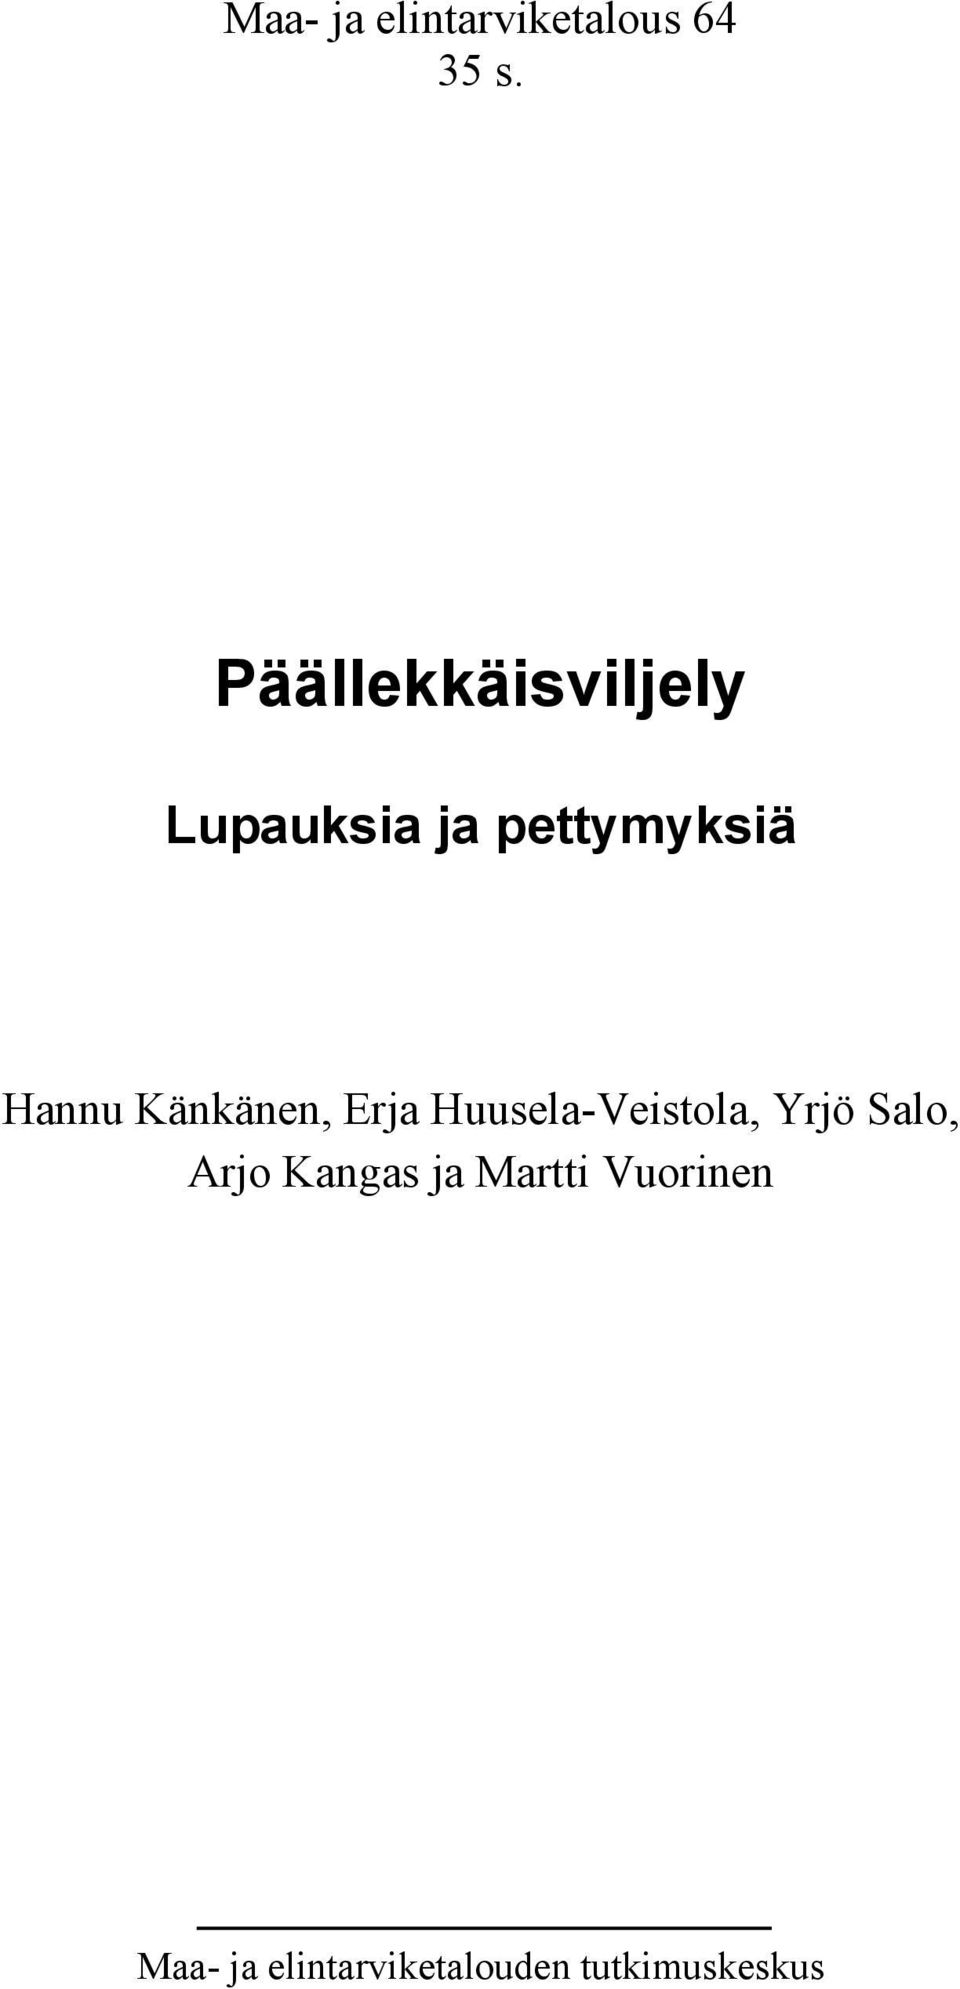 Känkänen, Erja Huusela-Veistola, Yrjö Salo, Arjo